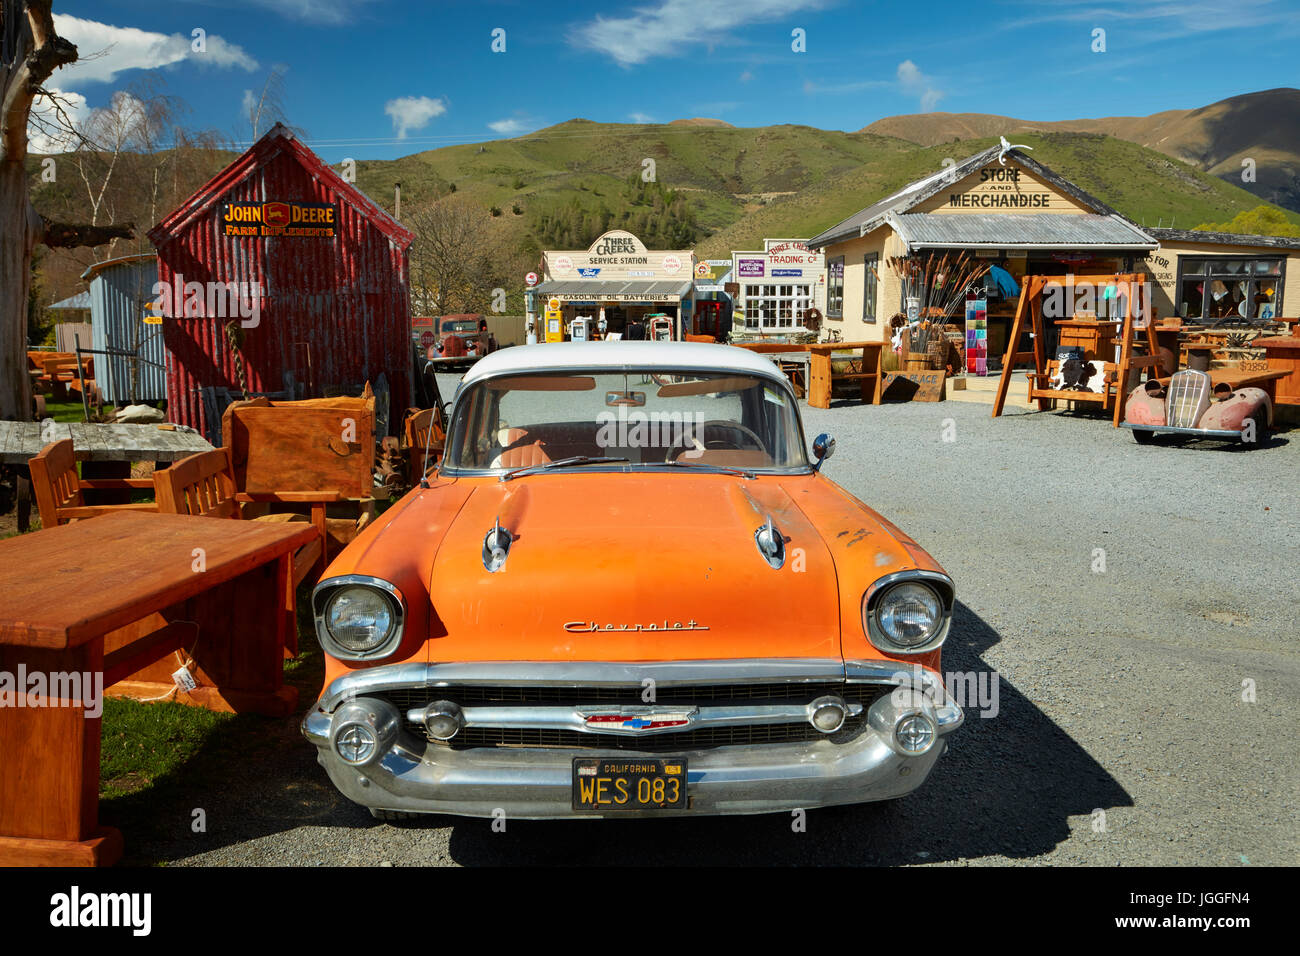 1957 Chevrolet a tre insenature Trading Company, Passo Burkes, Mackenzie Country, Canterbury, Isola del Sud, Nuova Zelanda Foto Stock